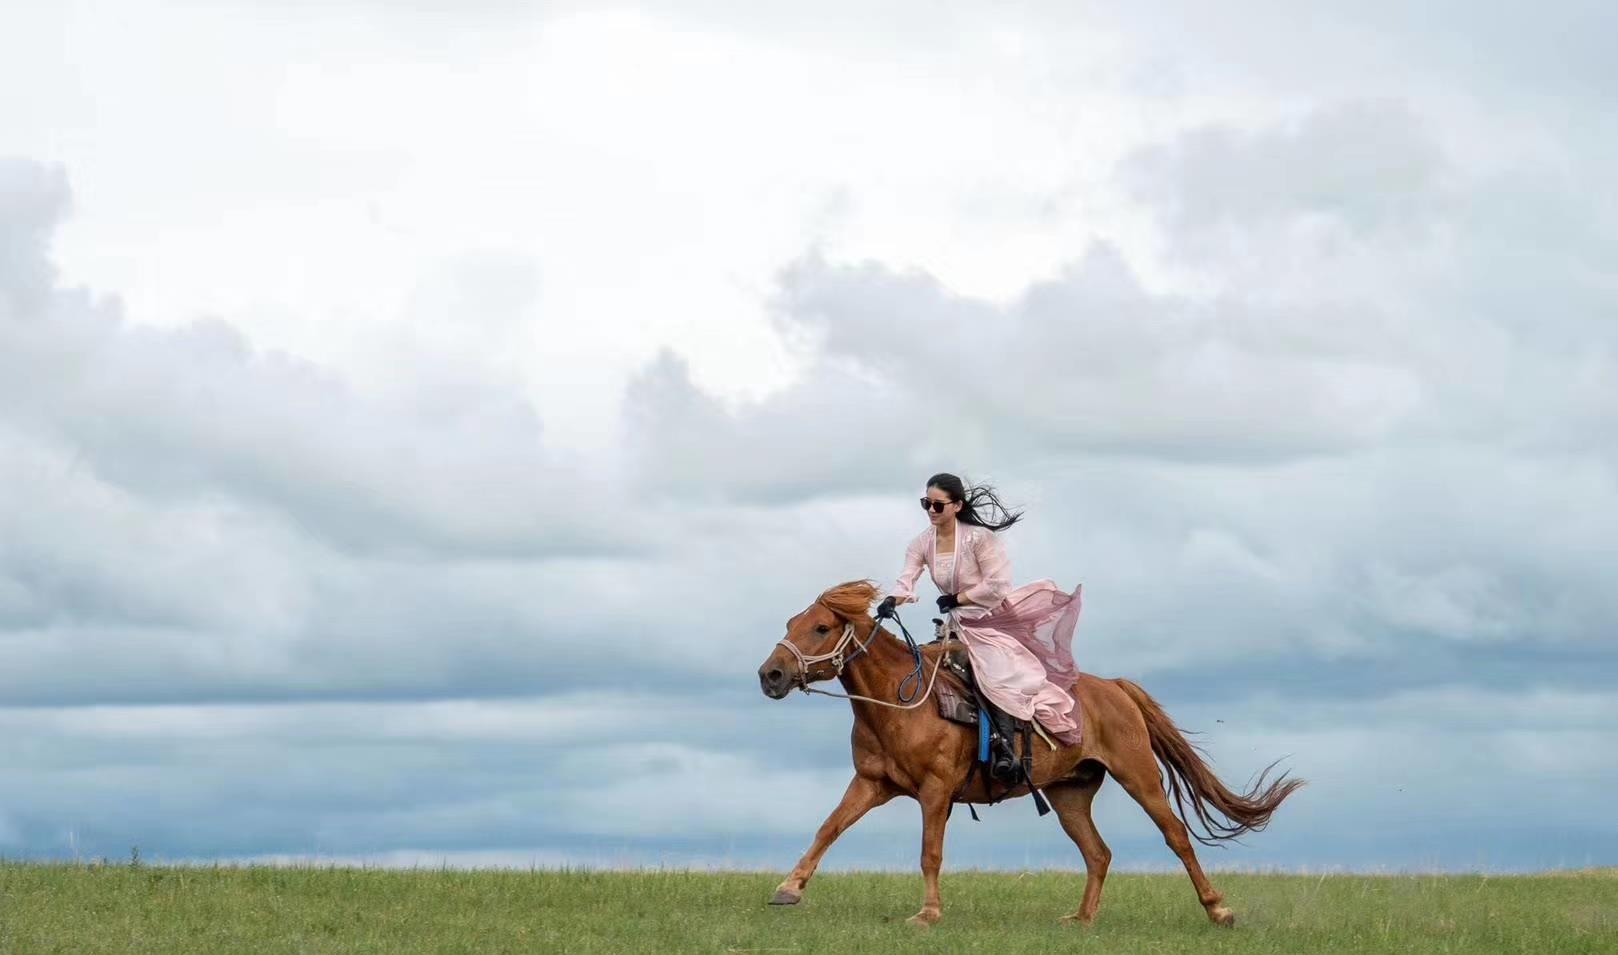 女子骑马奔跑图片